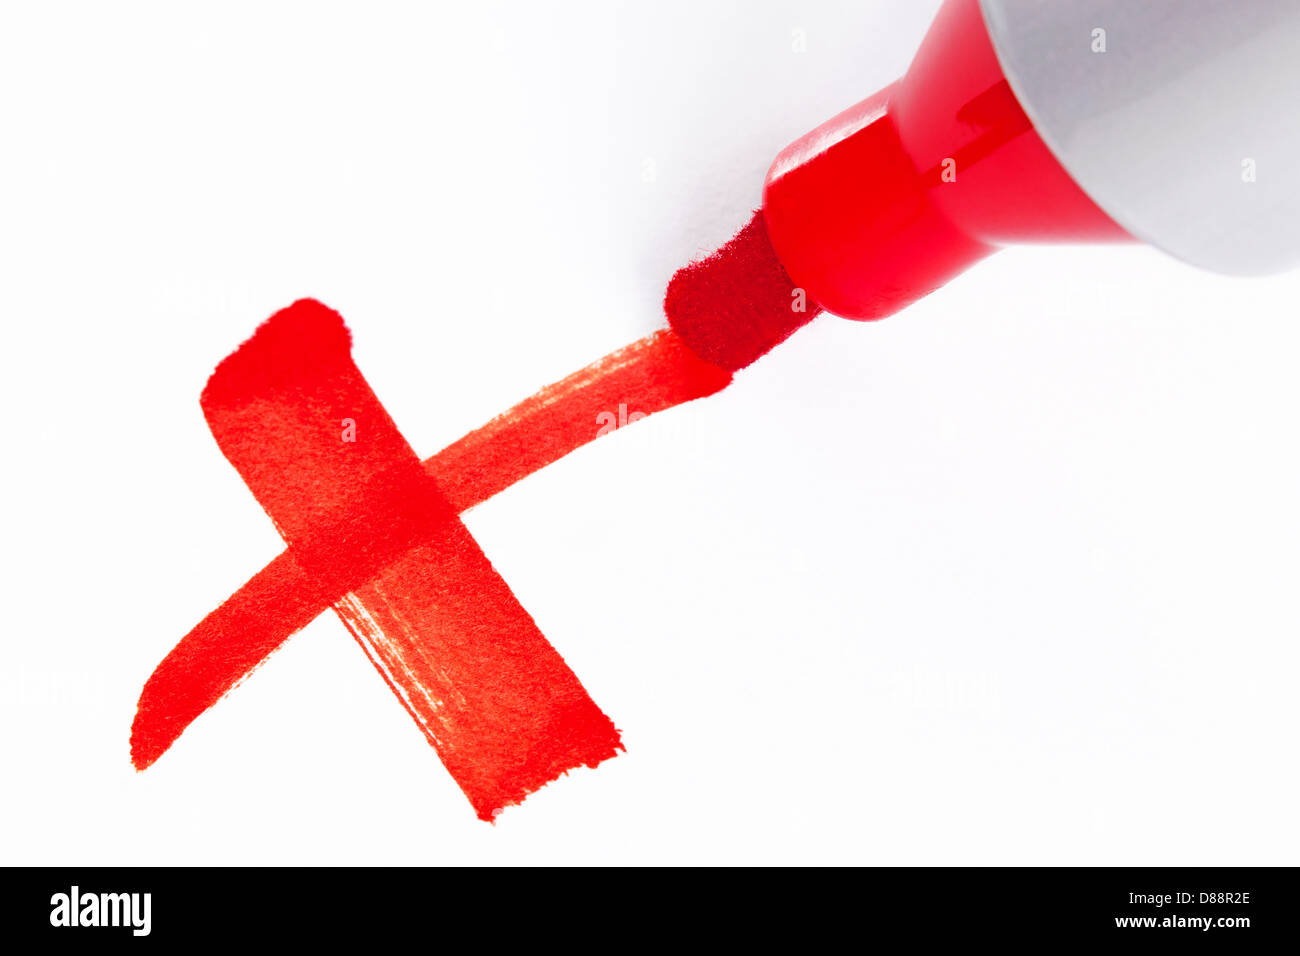 La foto de un rotulador rojo grande Pluma escribiendo una cruz X sobre papel blanco Foto de stock